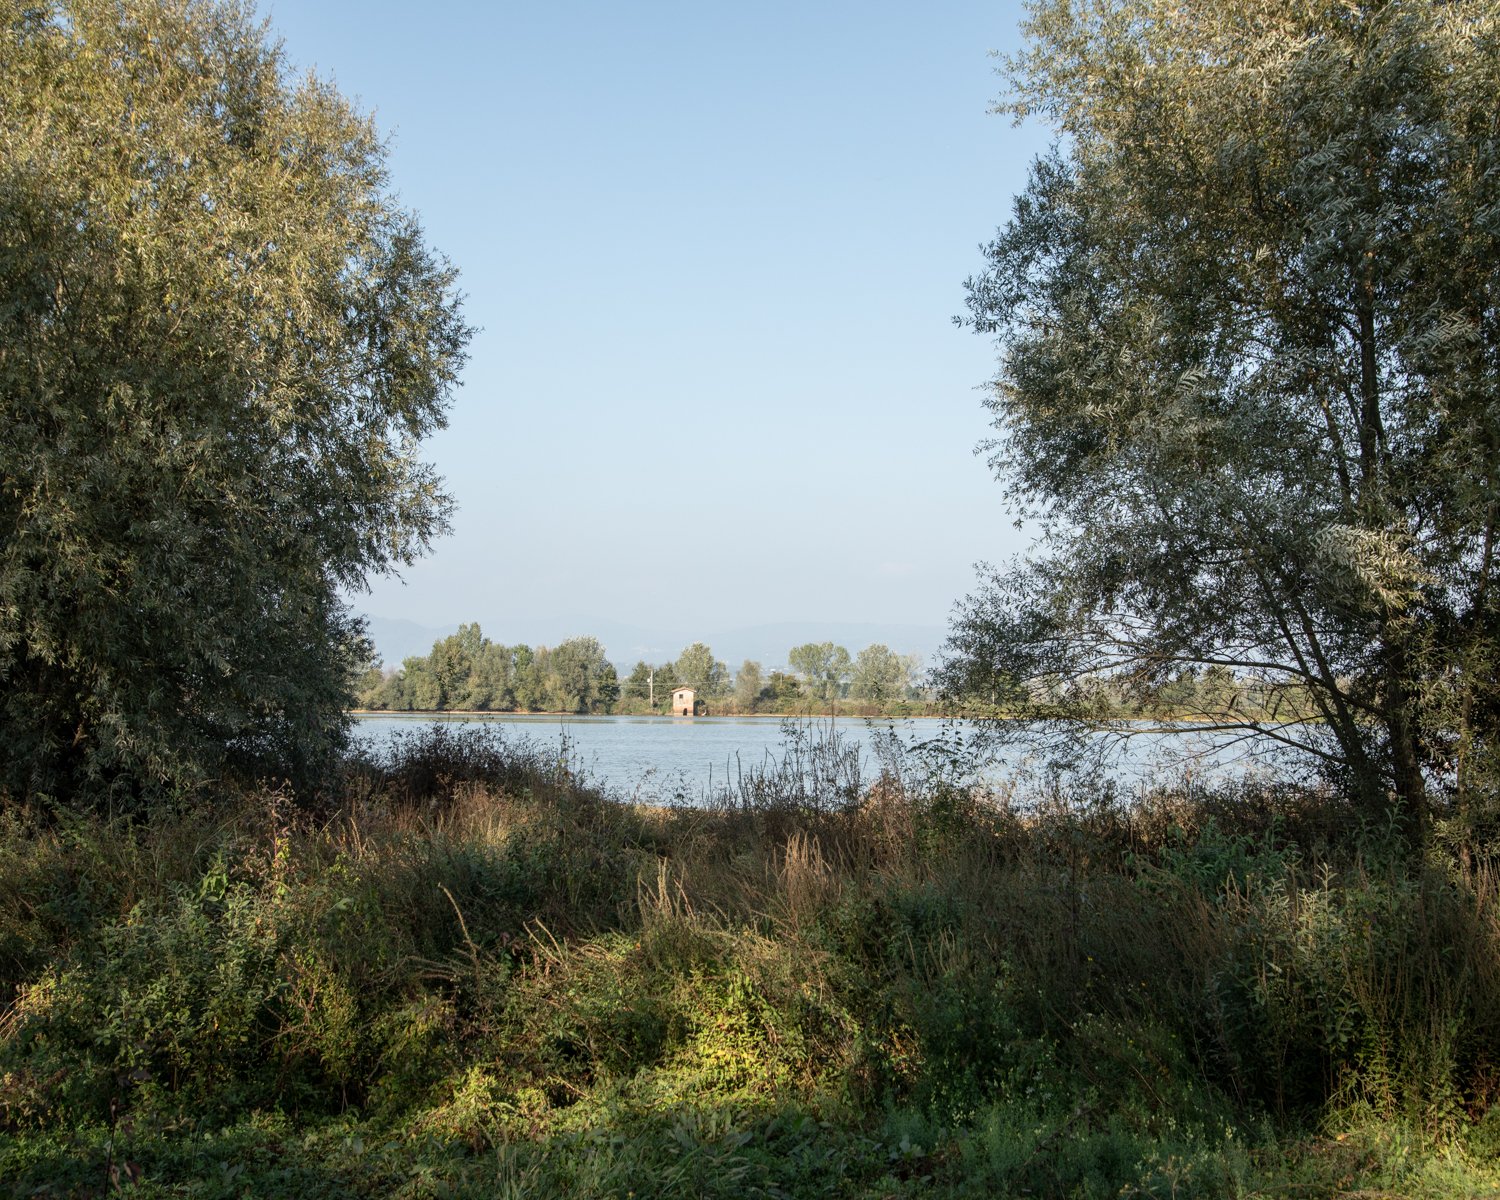  Il Lago della Gherardesca, residuato dall’antico lago di Sesto. Capannori, (Lucca), 2023. Fino alla metà del 1800 l’area del Padule era caratterizzata dal Lago di Sesto, il più esteso lago della Toscana, che fu bonificato per il crescente bisogno di